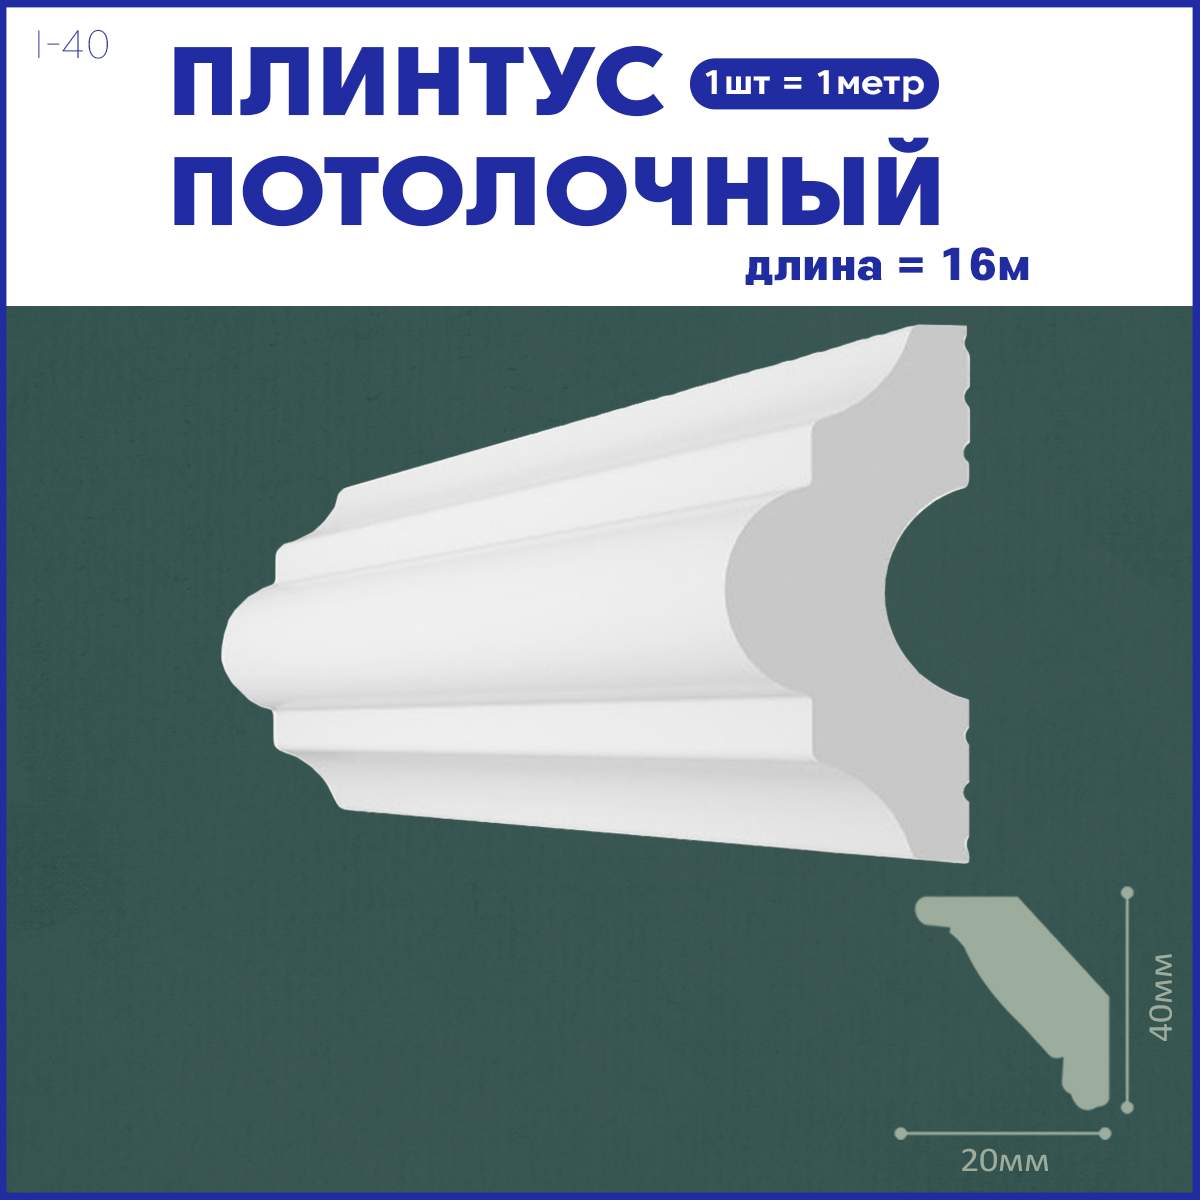 Плинтус потолочный Поставщикофф i-40, комплект 16 шт. x 1м, 16 метров